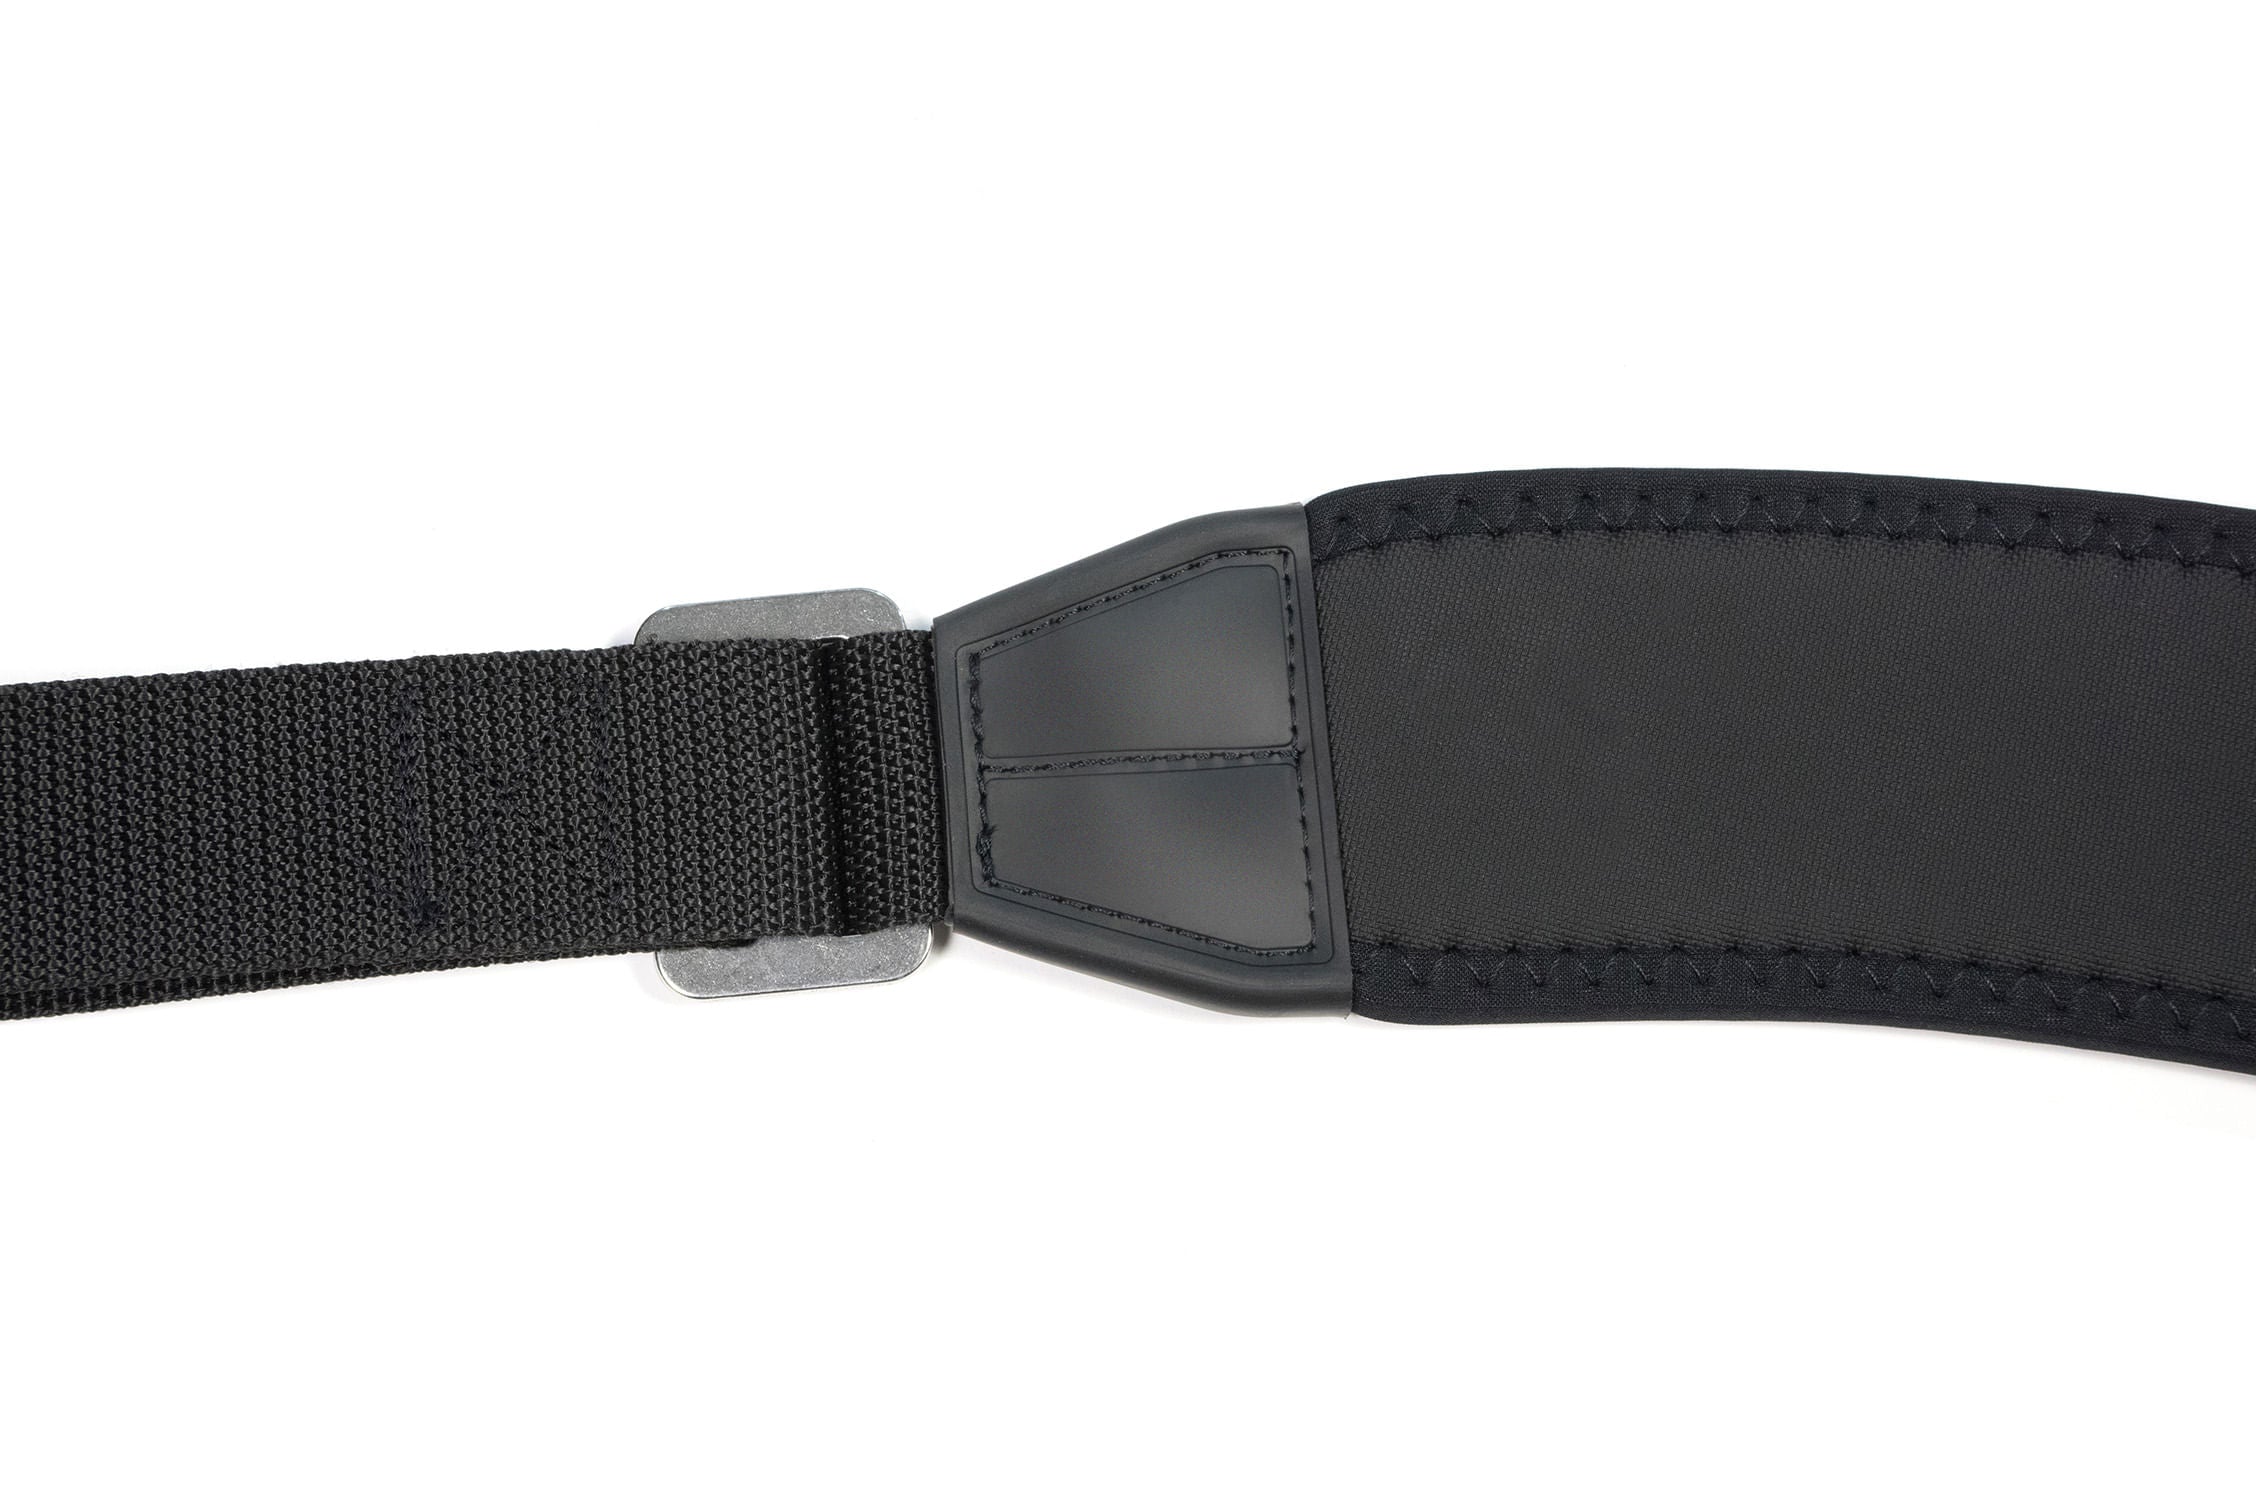 Neoprene shoulder strap with anti slip rubber. 